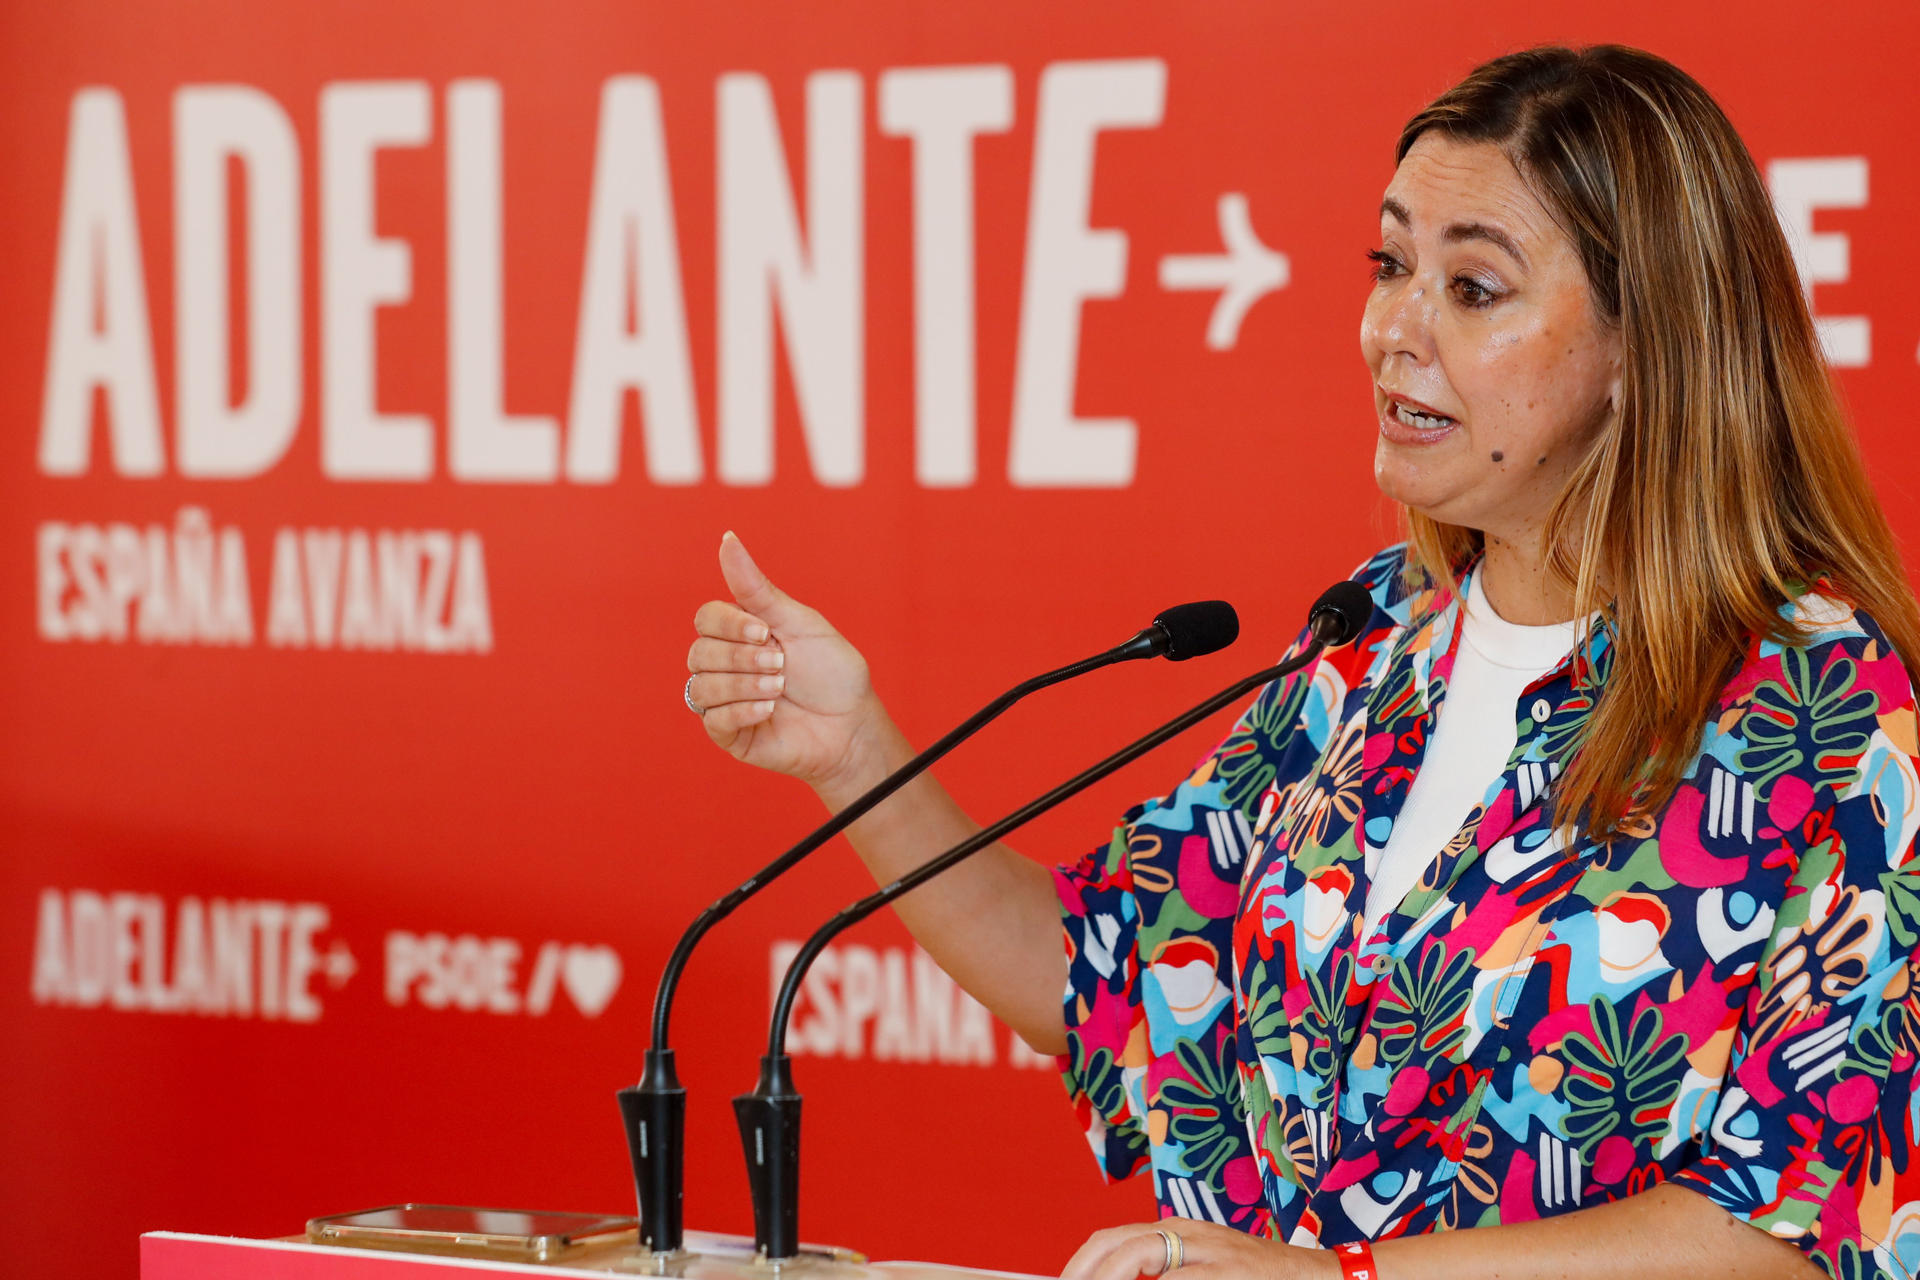 La candidata del PSOE al Congreso por Las Palmas, Dolores Corujo, presentó este jueves en rueda de prensa su programa electoral. EFE/ Elvira Urquijo A.